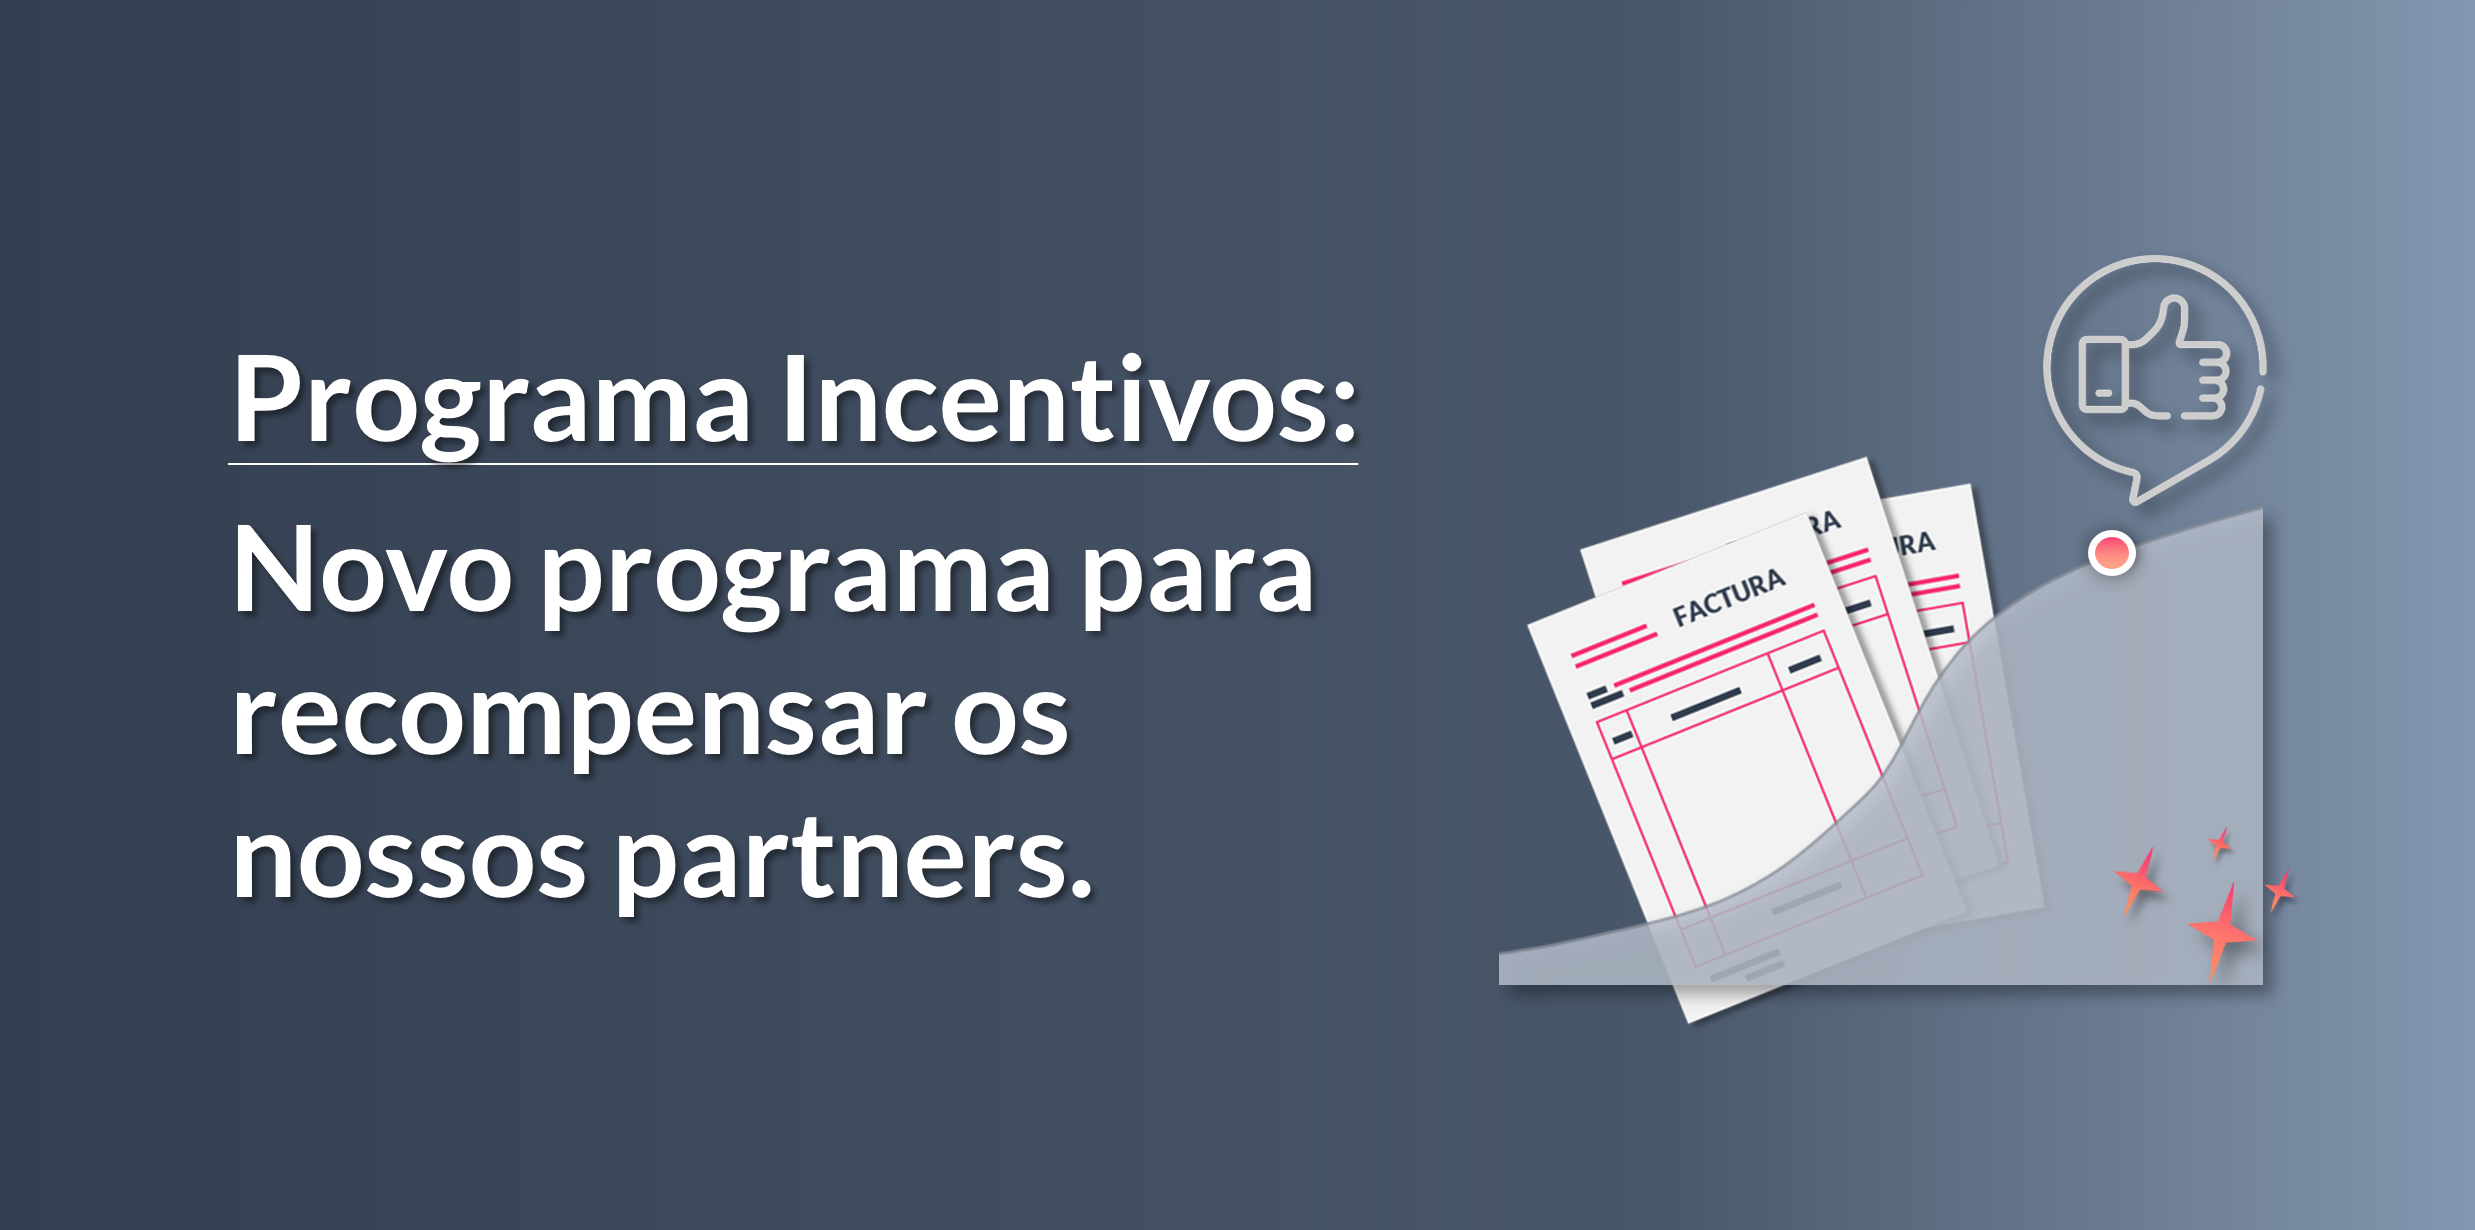 Novo programa de incentivos para partners